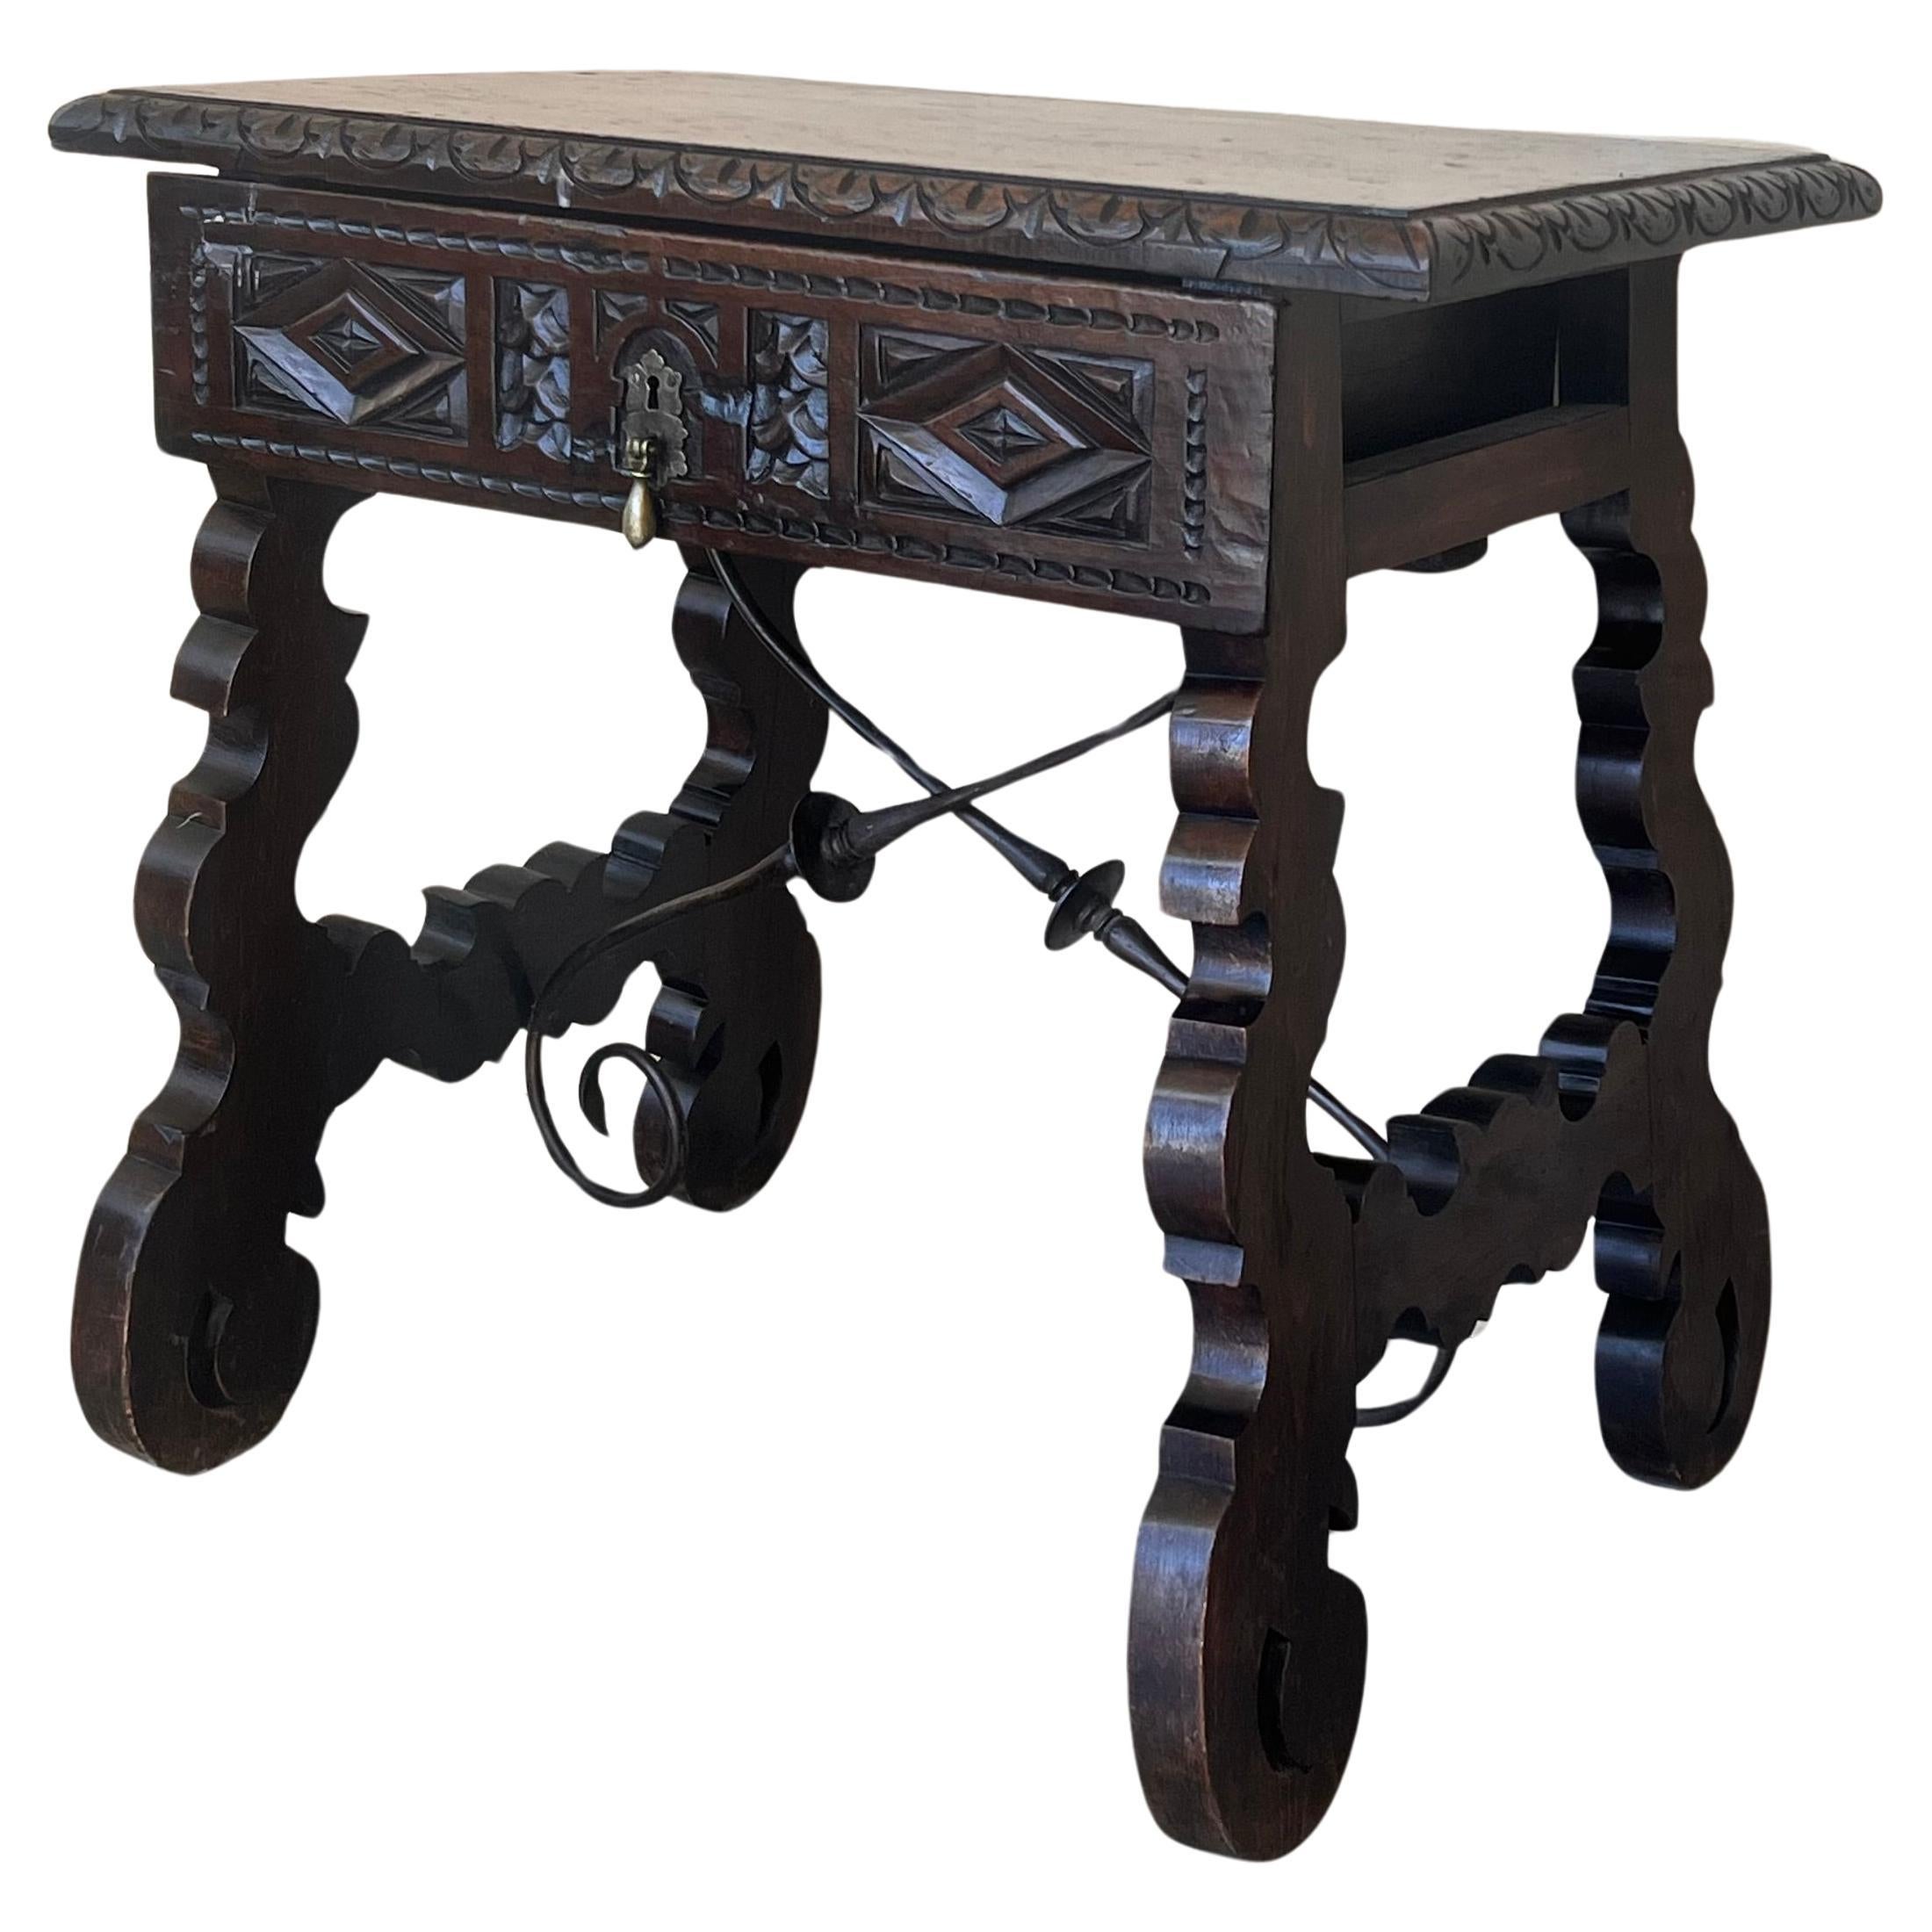 Table console espagnole de la 18e siècle avec tiroirs sculptés et quincaillerie d'origine